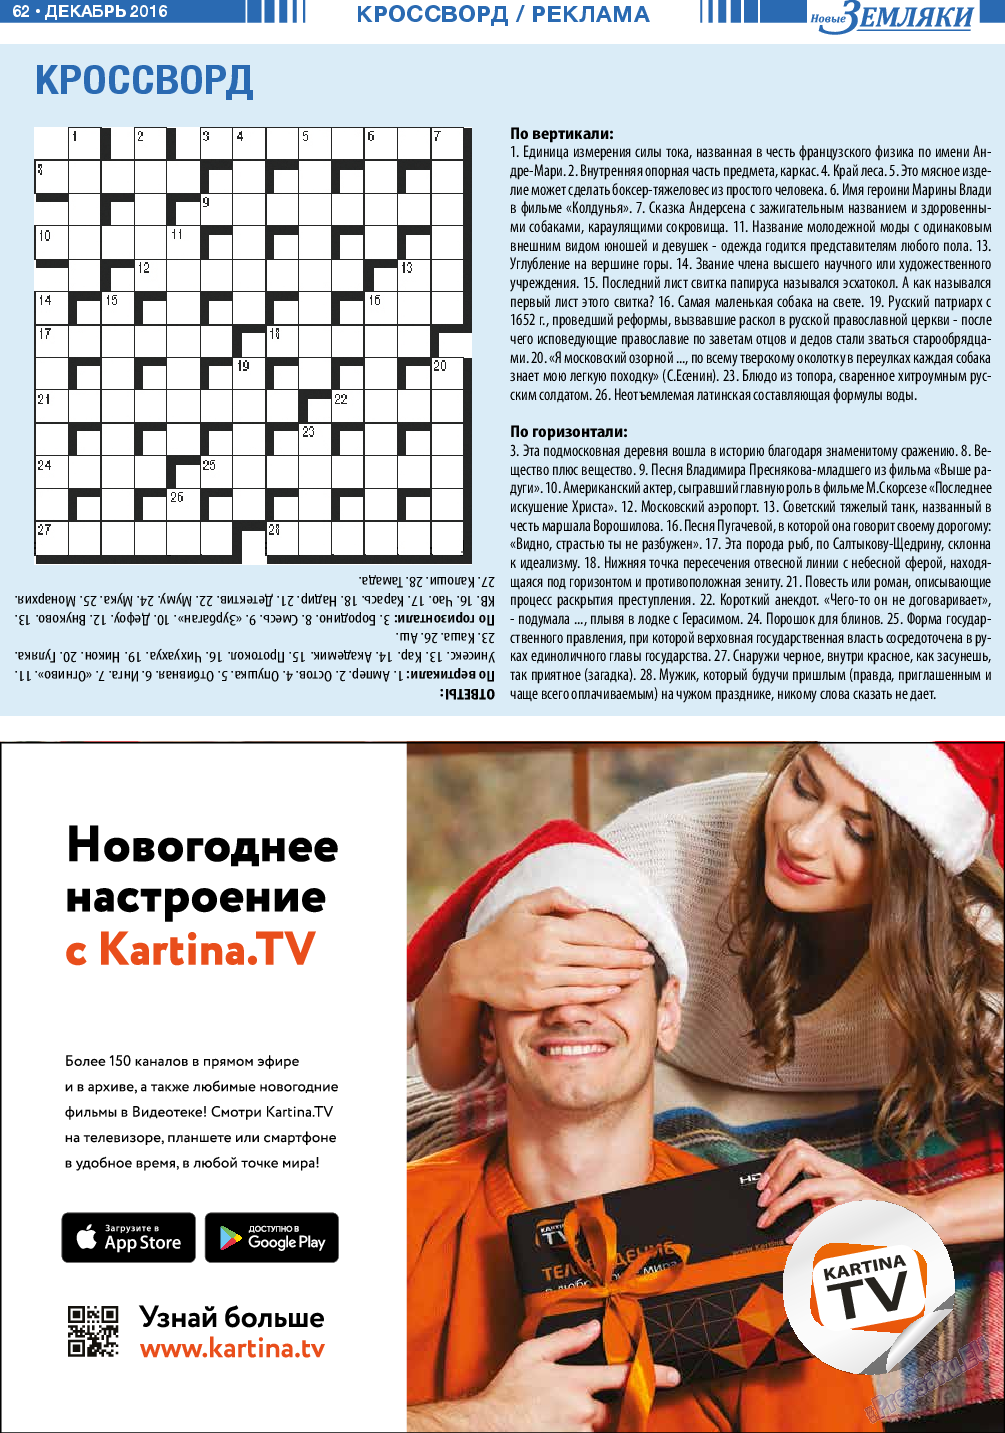 Новые Земляки, газета. 2016 №12 стр.62